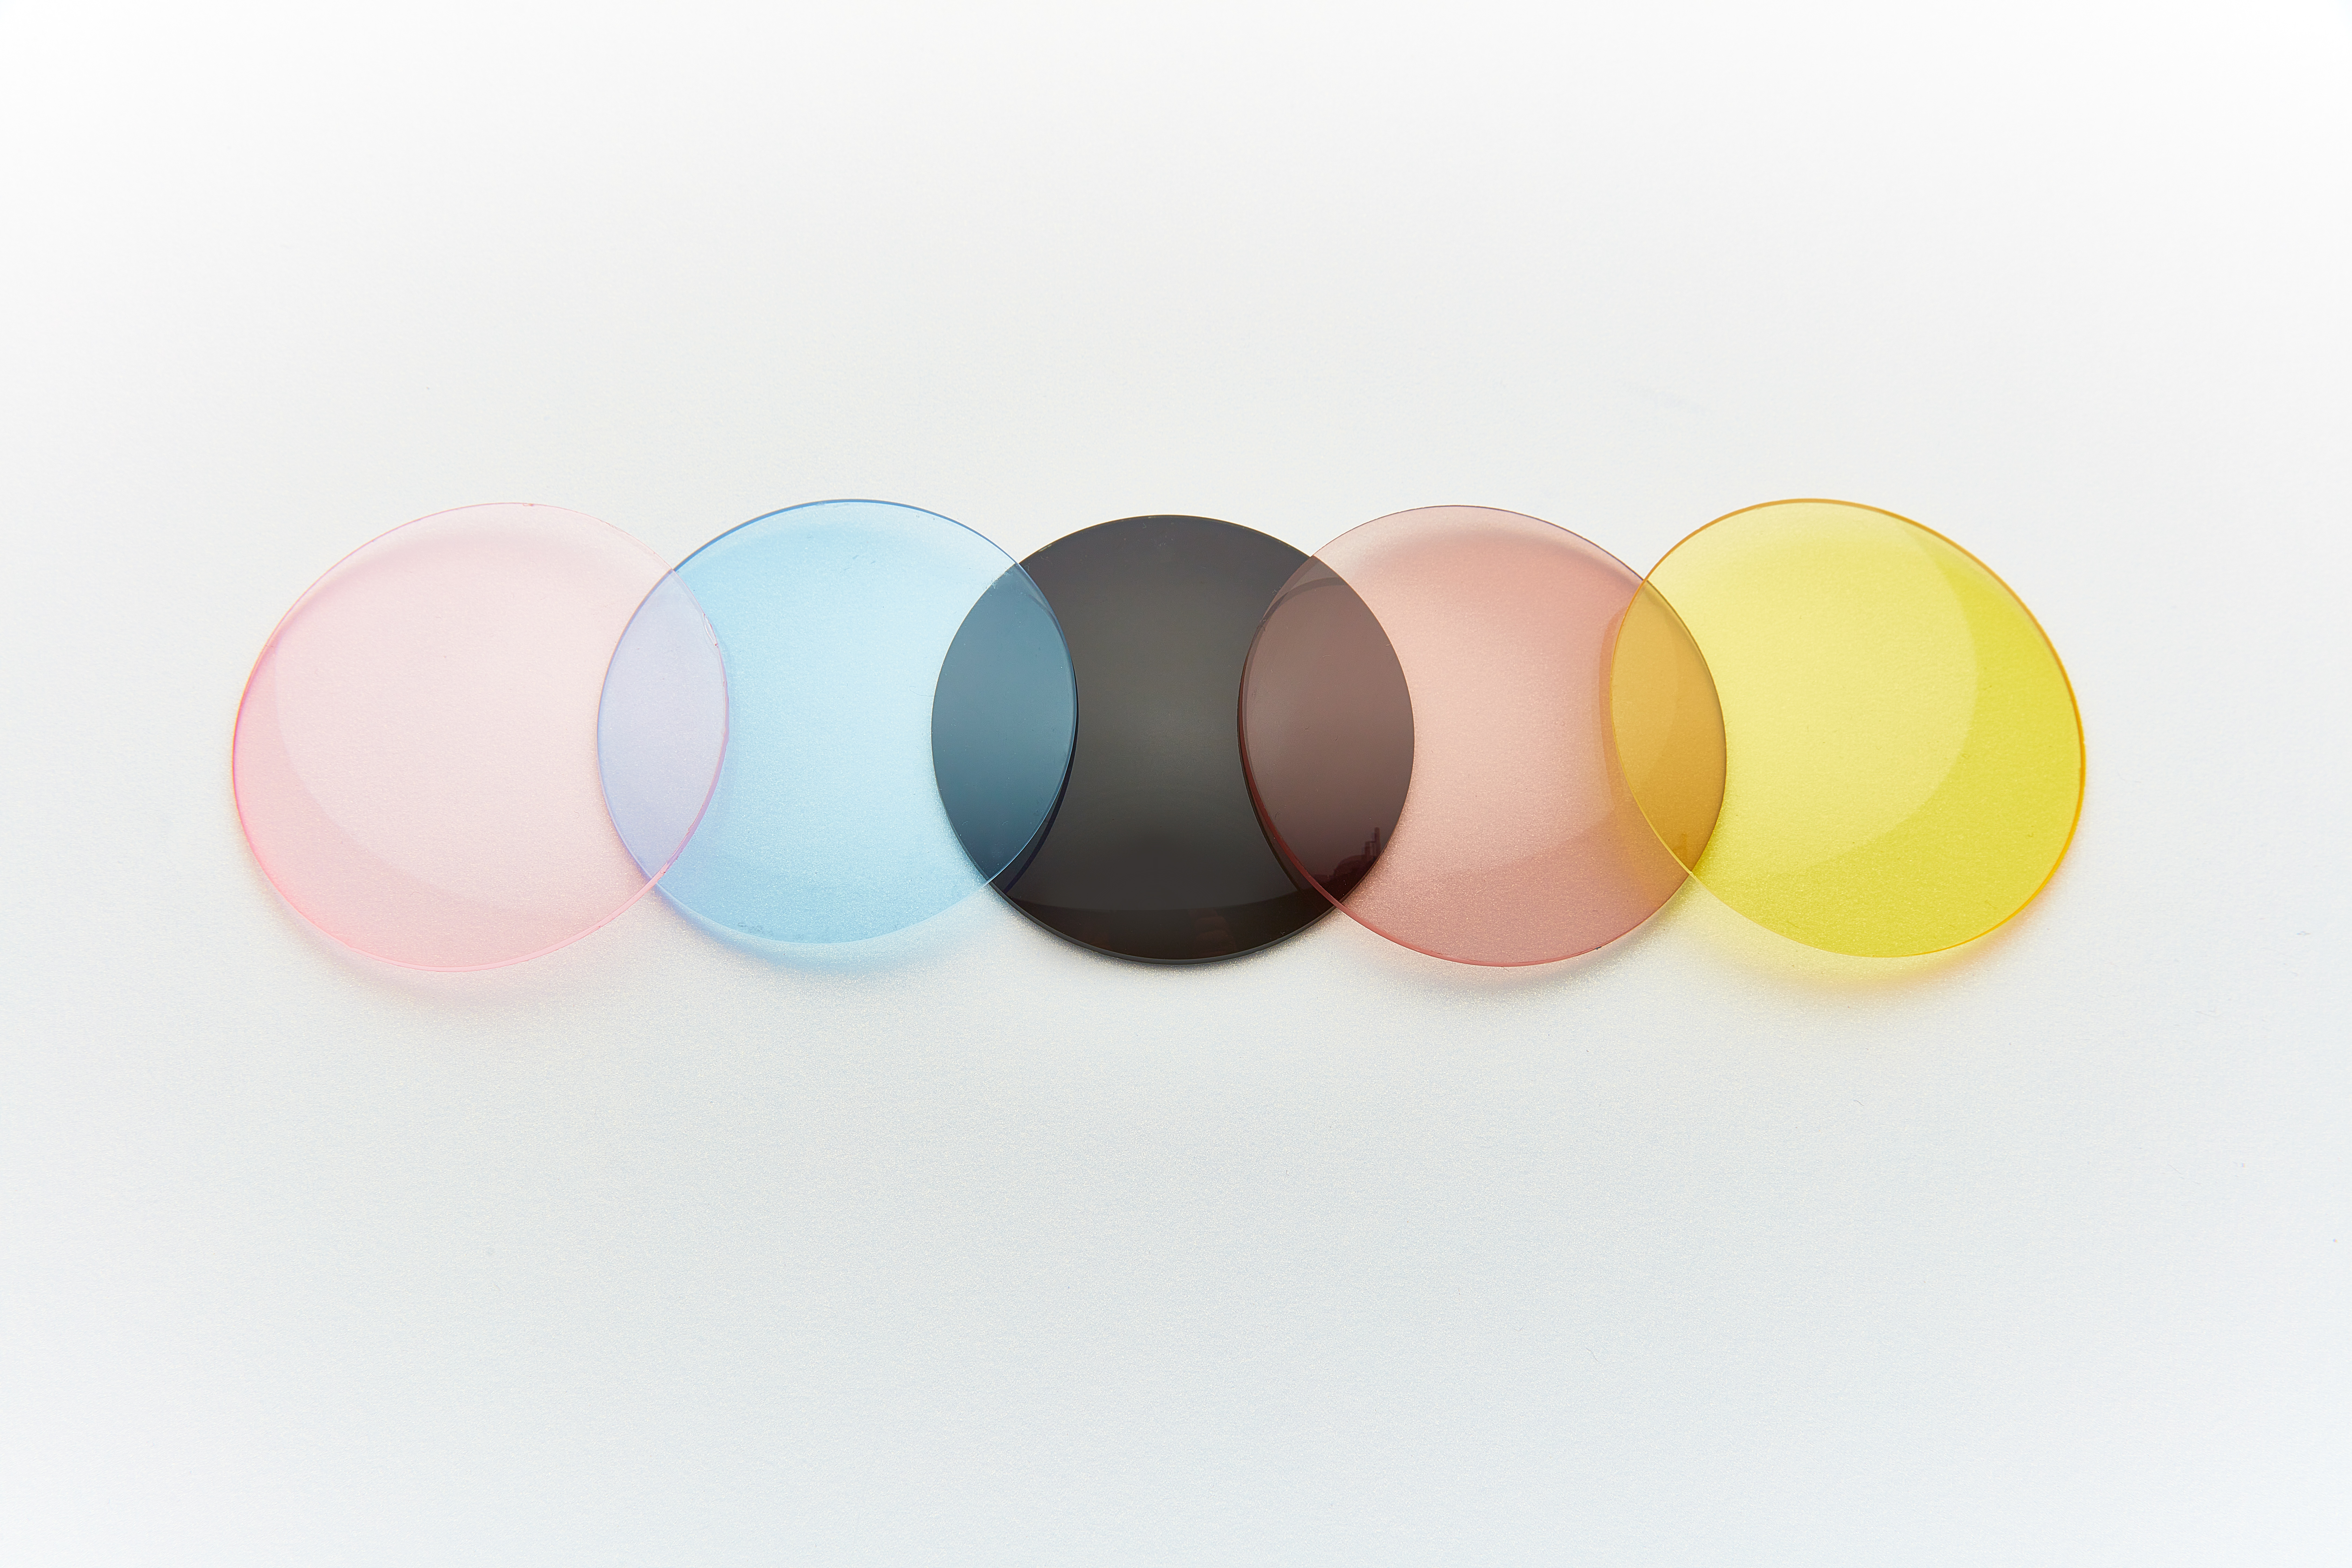 5 lentilles (rose, bleue, noire, rose, jaune) superposées pour voir les mélanges de couleur